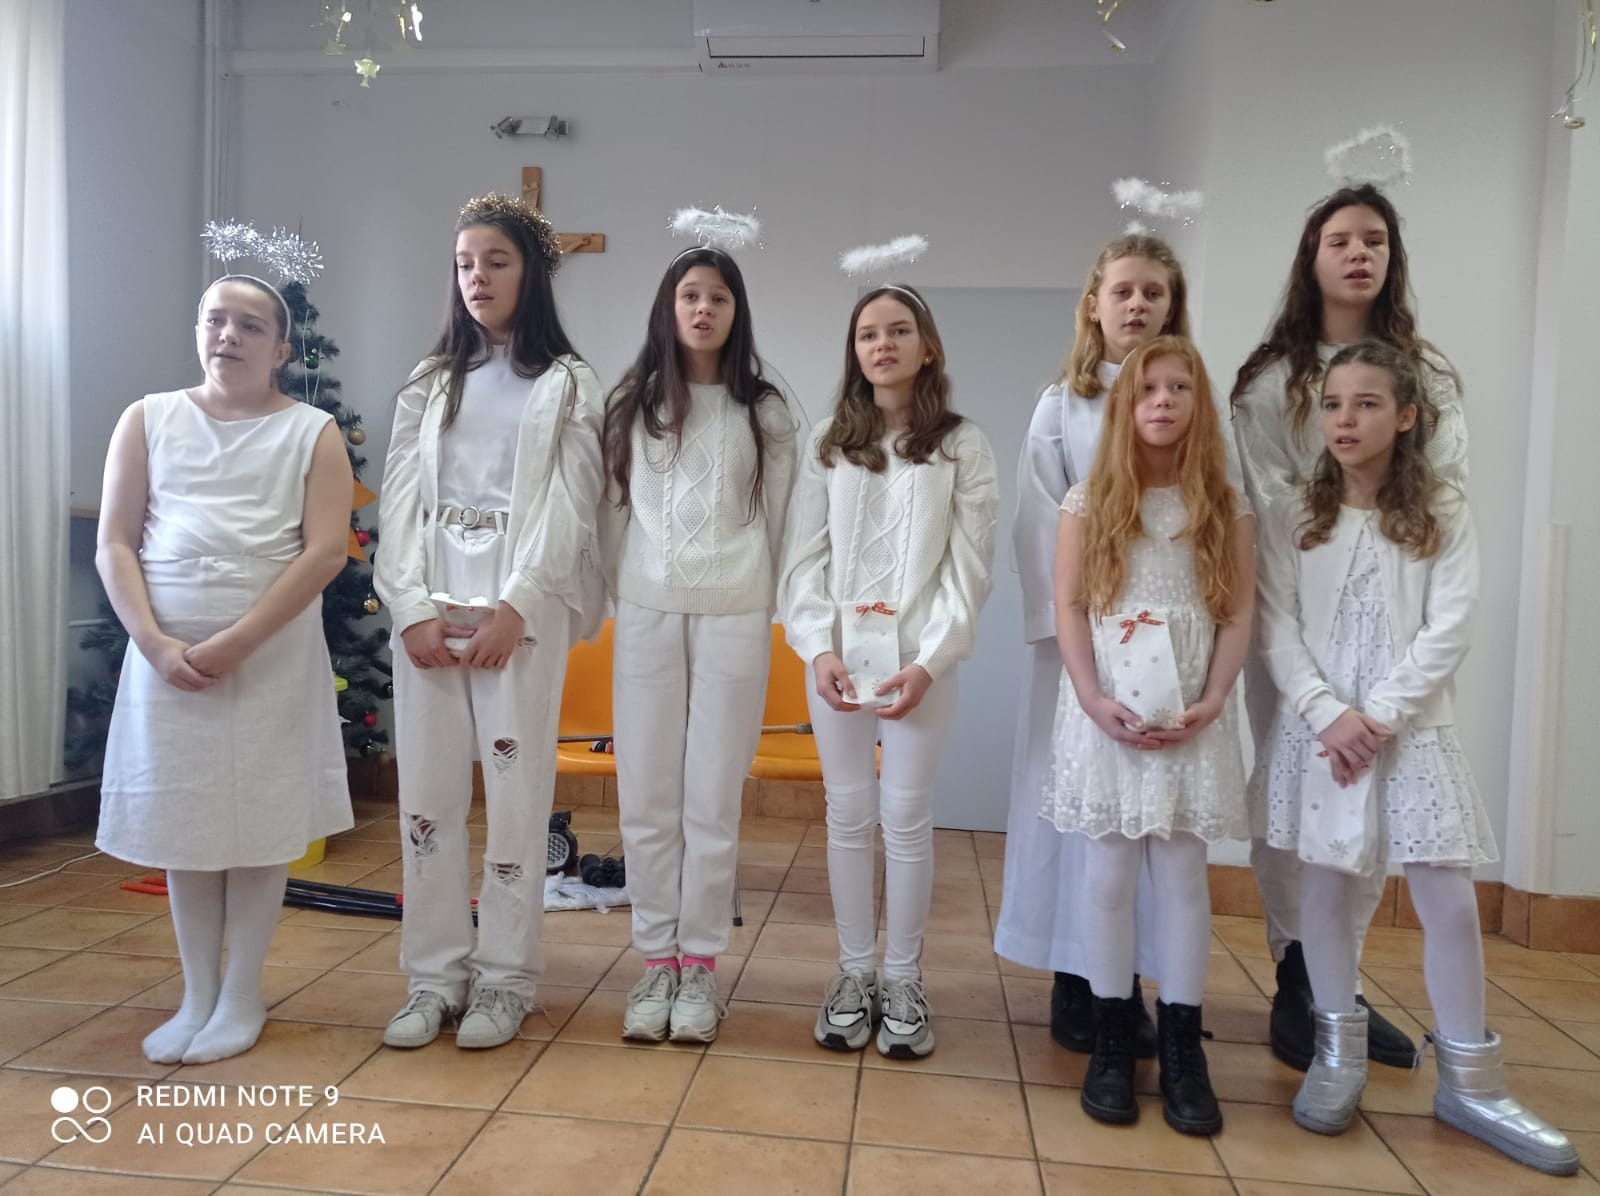 Chór - osiem dziewcząt ubranych w białe stroje anielskie (ze skrzydłami, aureolami) śpiewa kolędę.